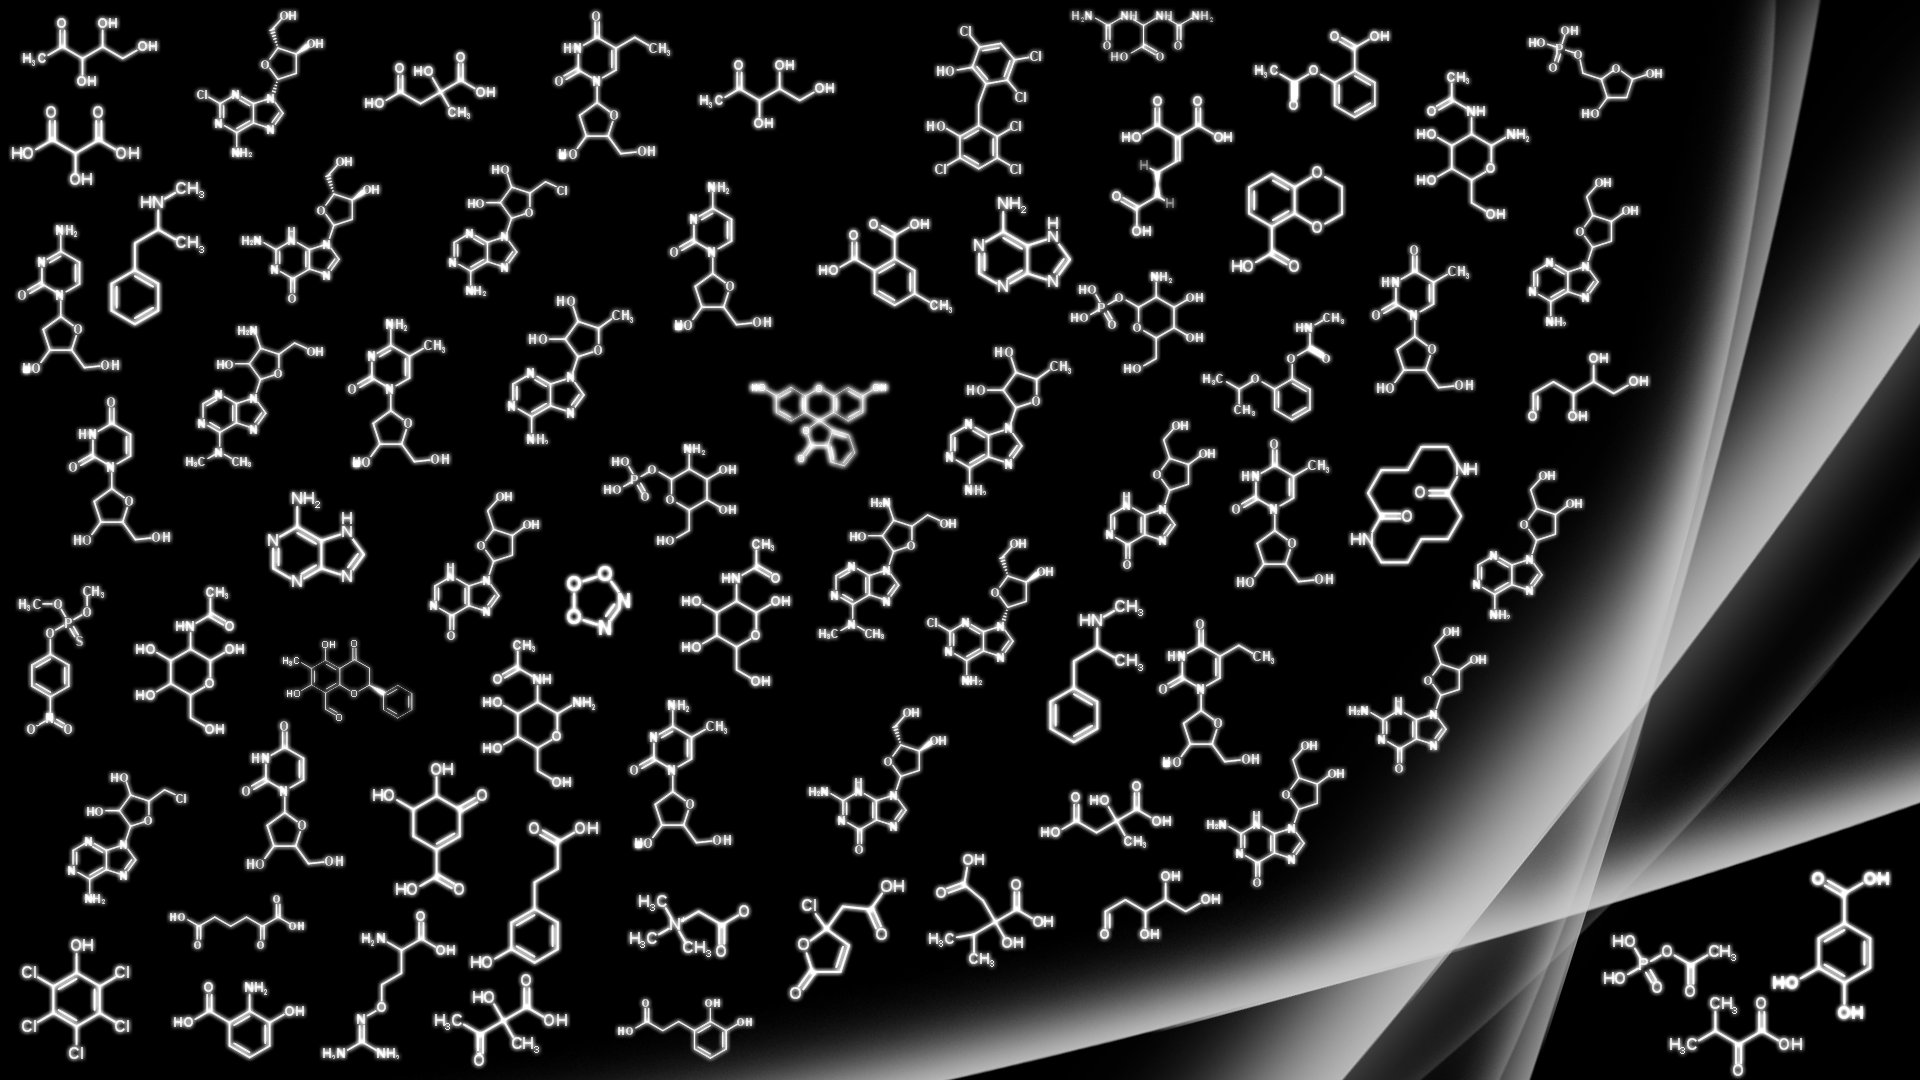 Chemistry wallpaper